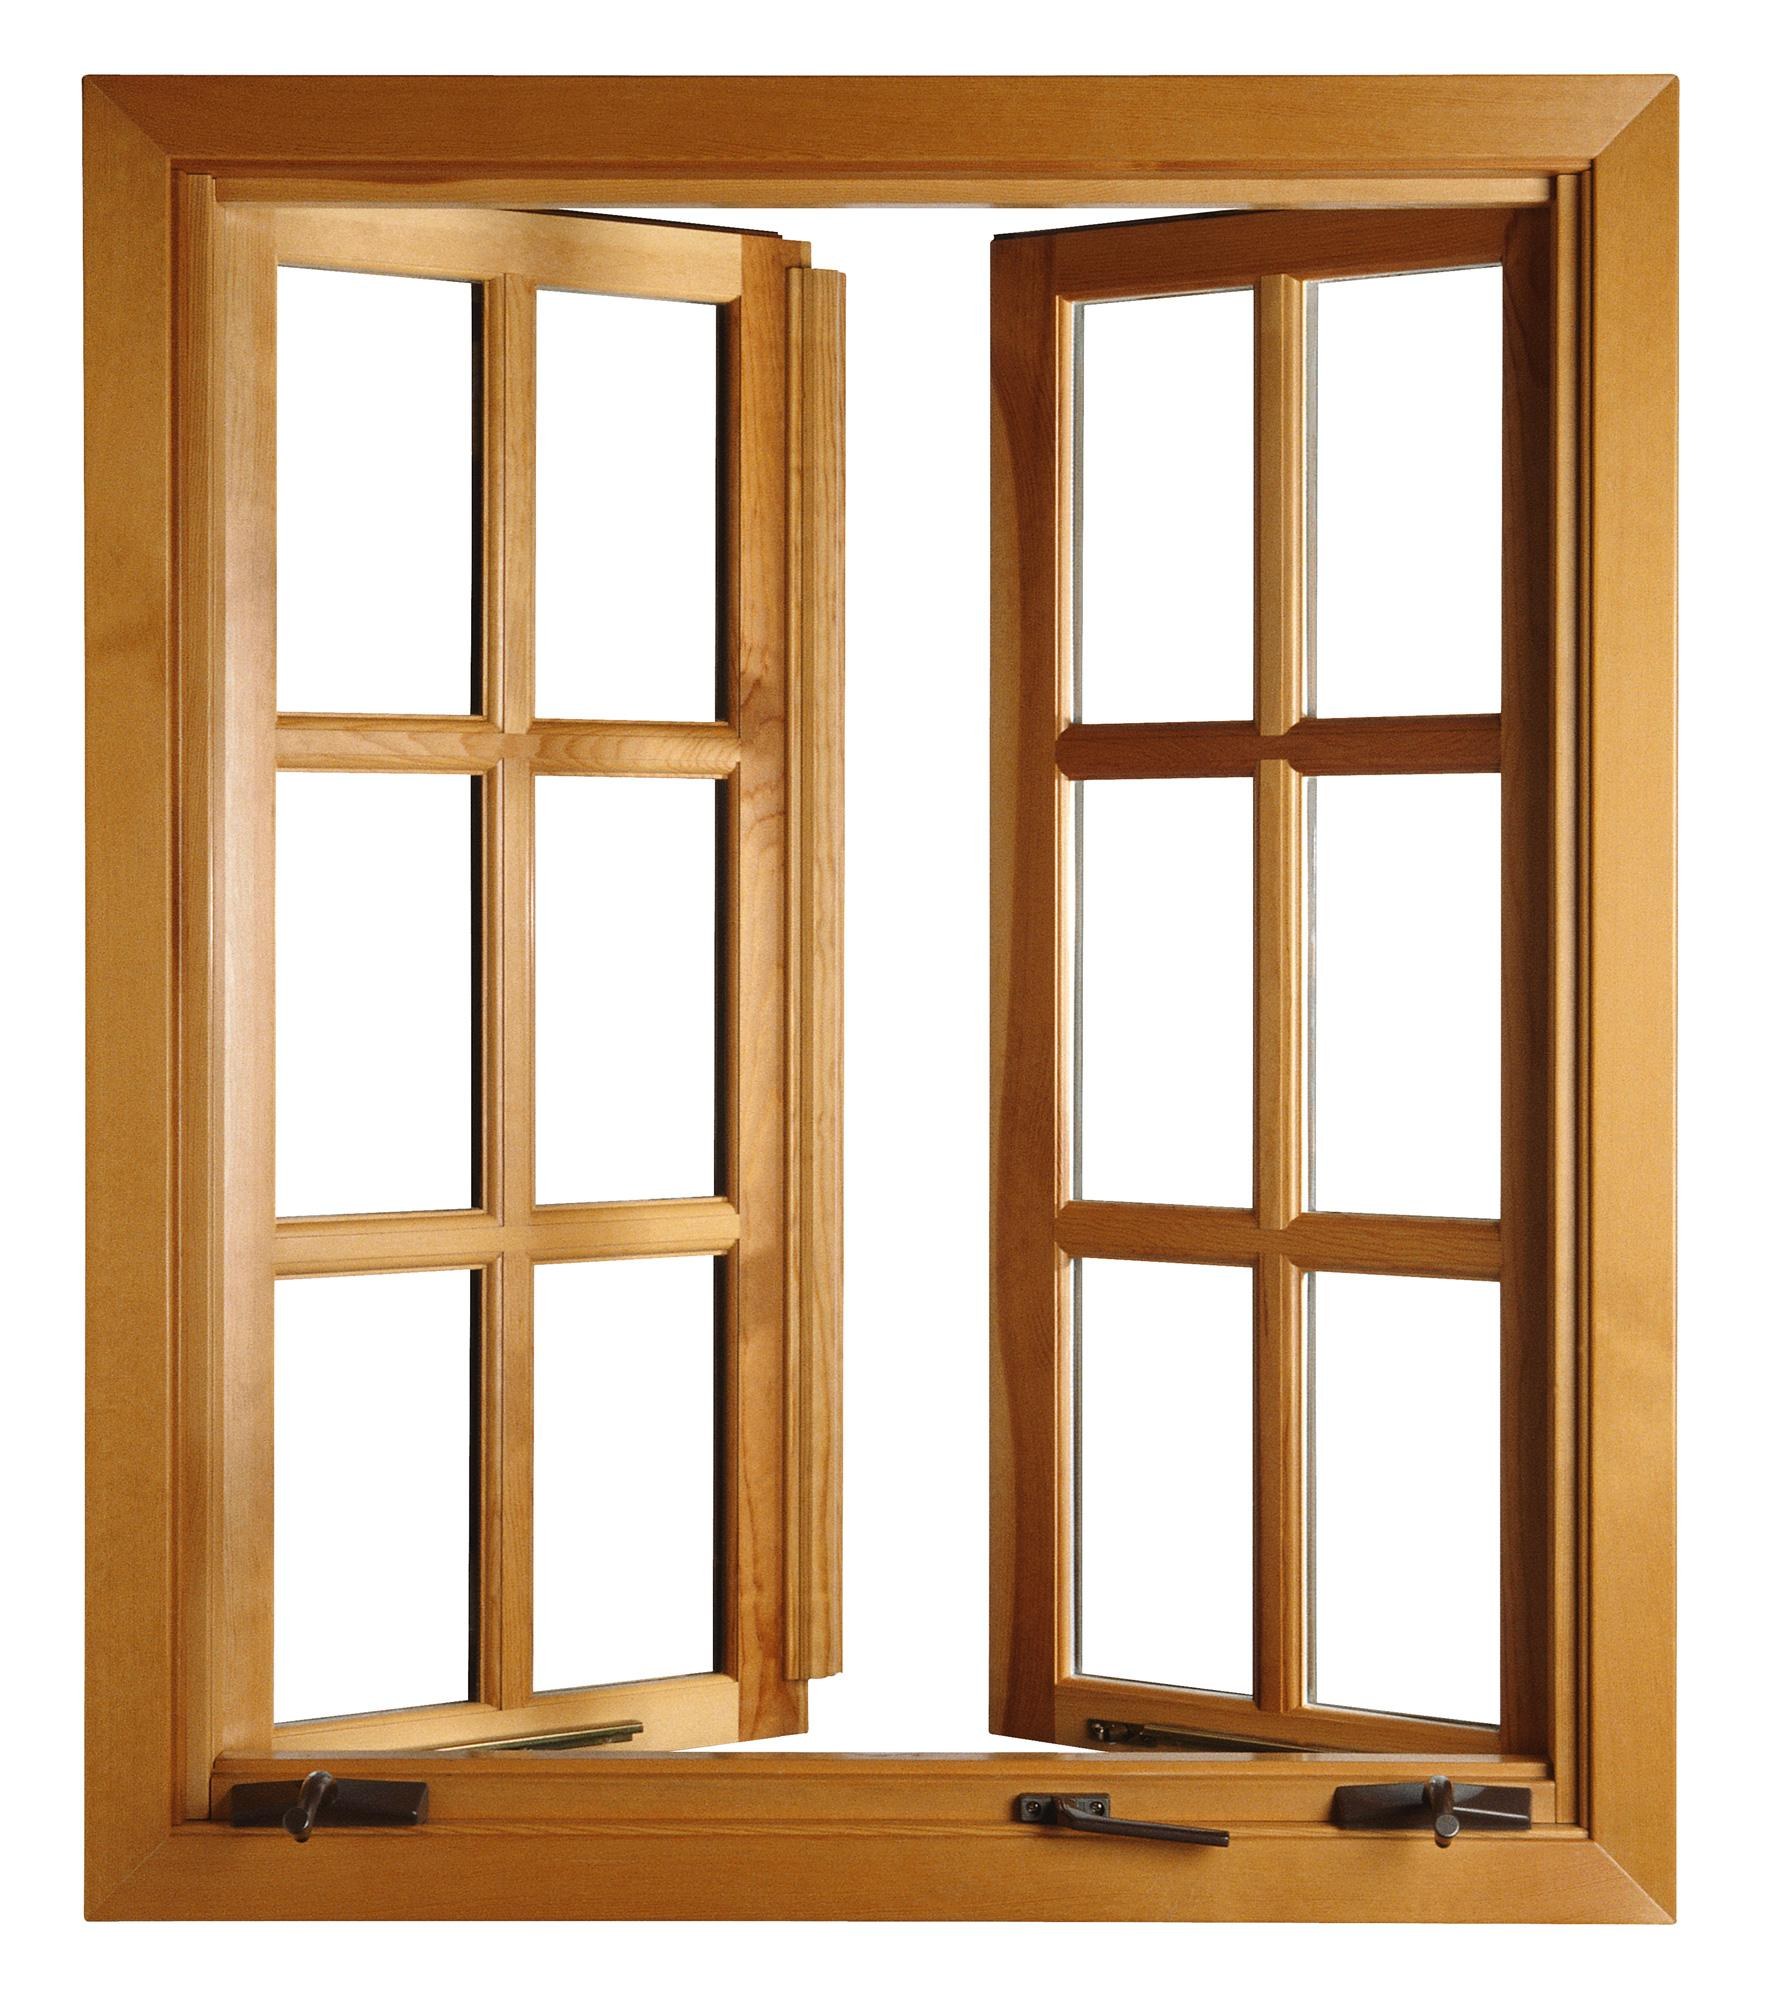 Купить деревянные окна цена. Окно деревянное террасное 1160х1000х45 мм 2 створки поворотные. Оконный блок с одинарным переплетом. Оконная рама деревянная. Деревянные рамы для окон.